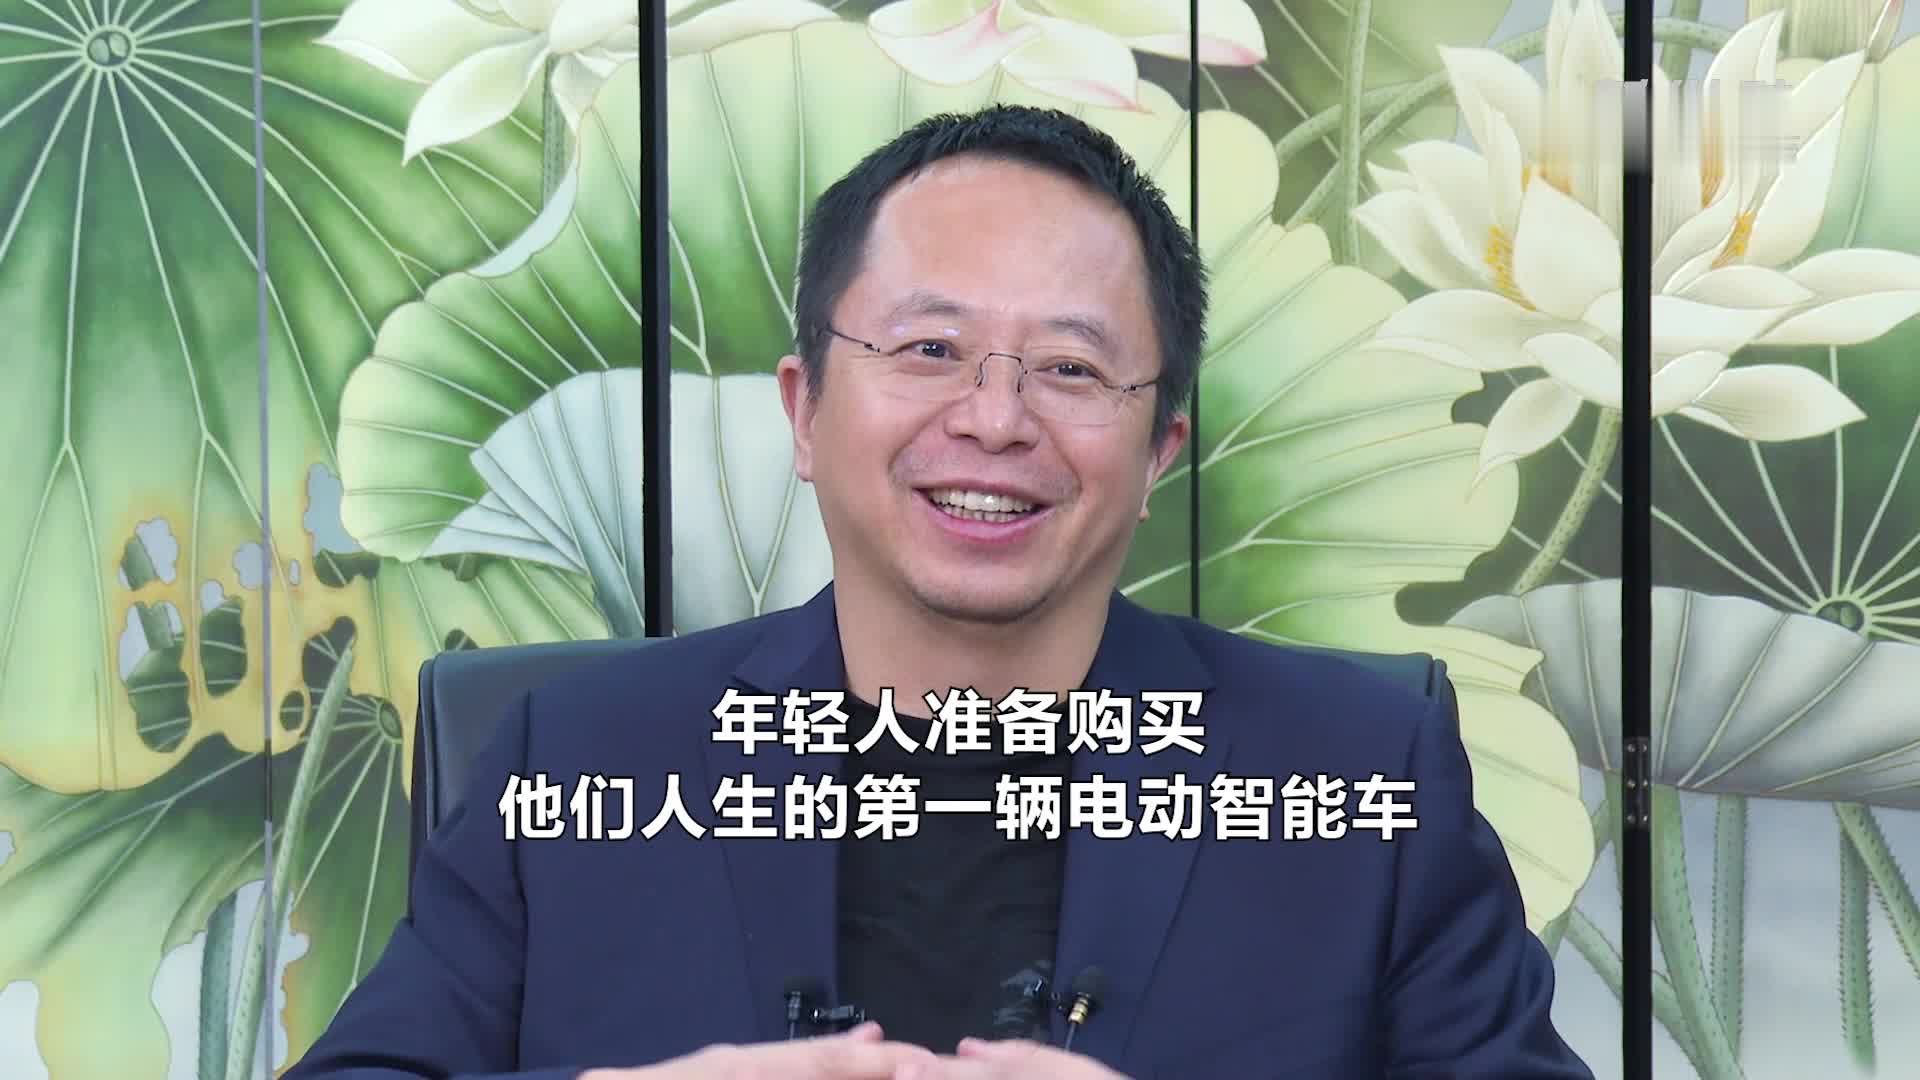 360集团创始人周鸿祎，确认出席2022搜狐财经峰会并演讲